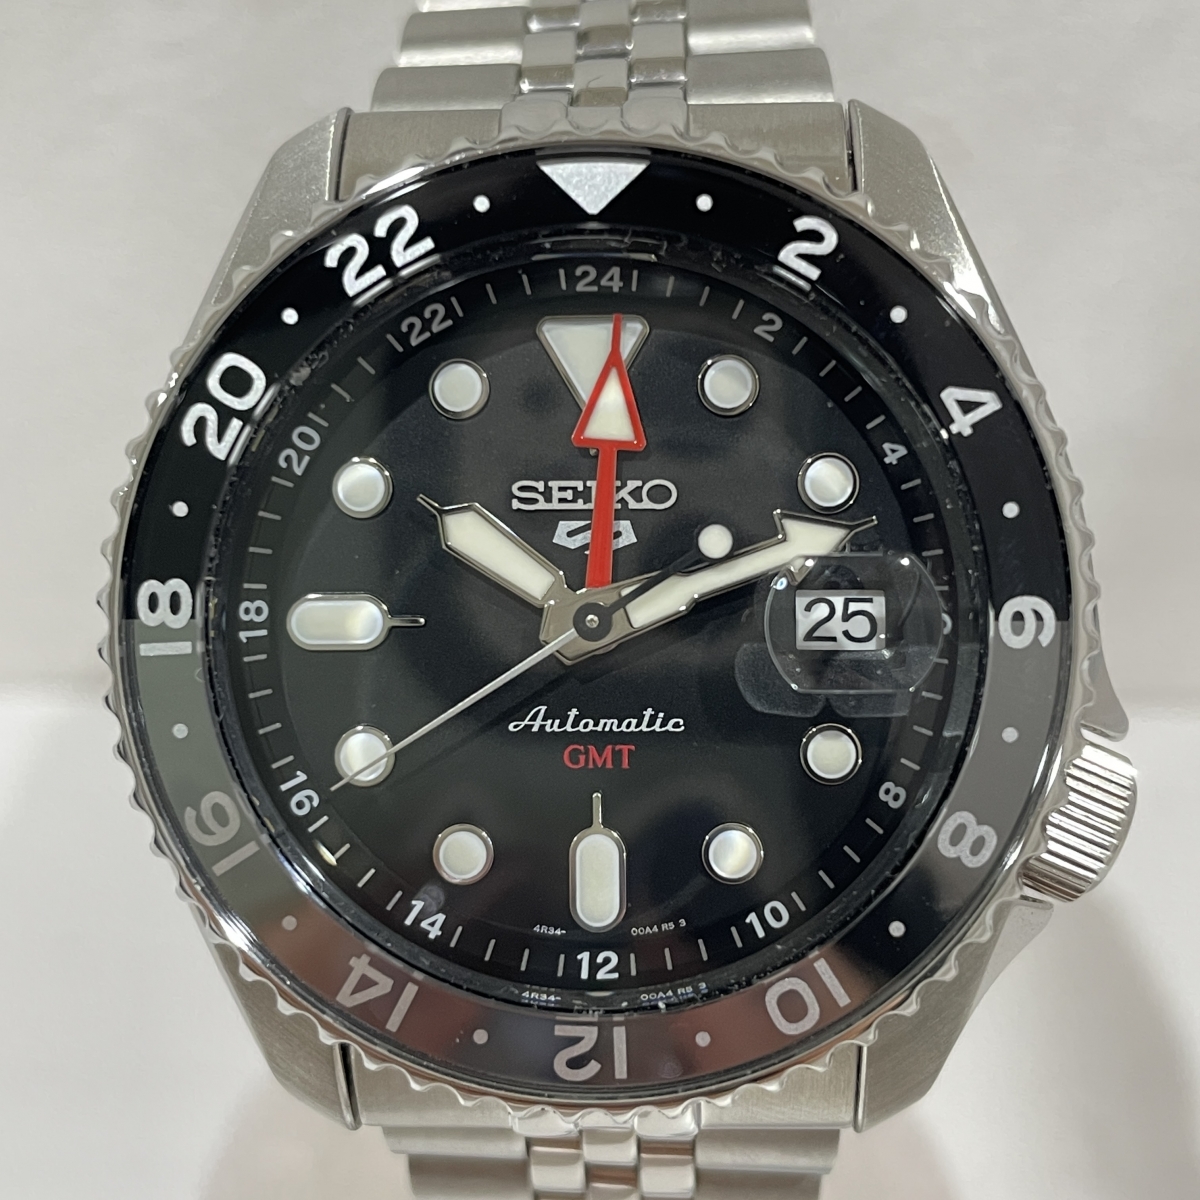 セイコーのブラック文字盤 5スポーツ 自動巻 腕時計 ssk001k1の買取実績です。